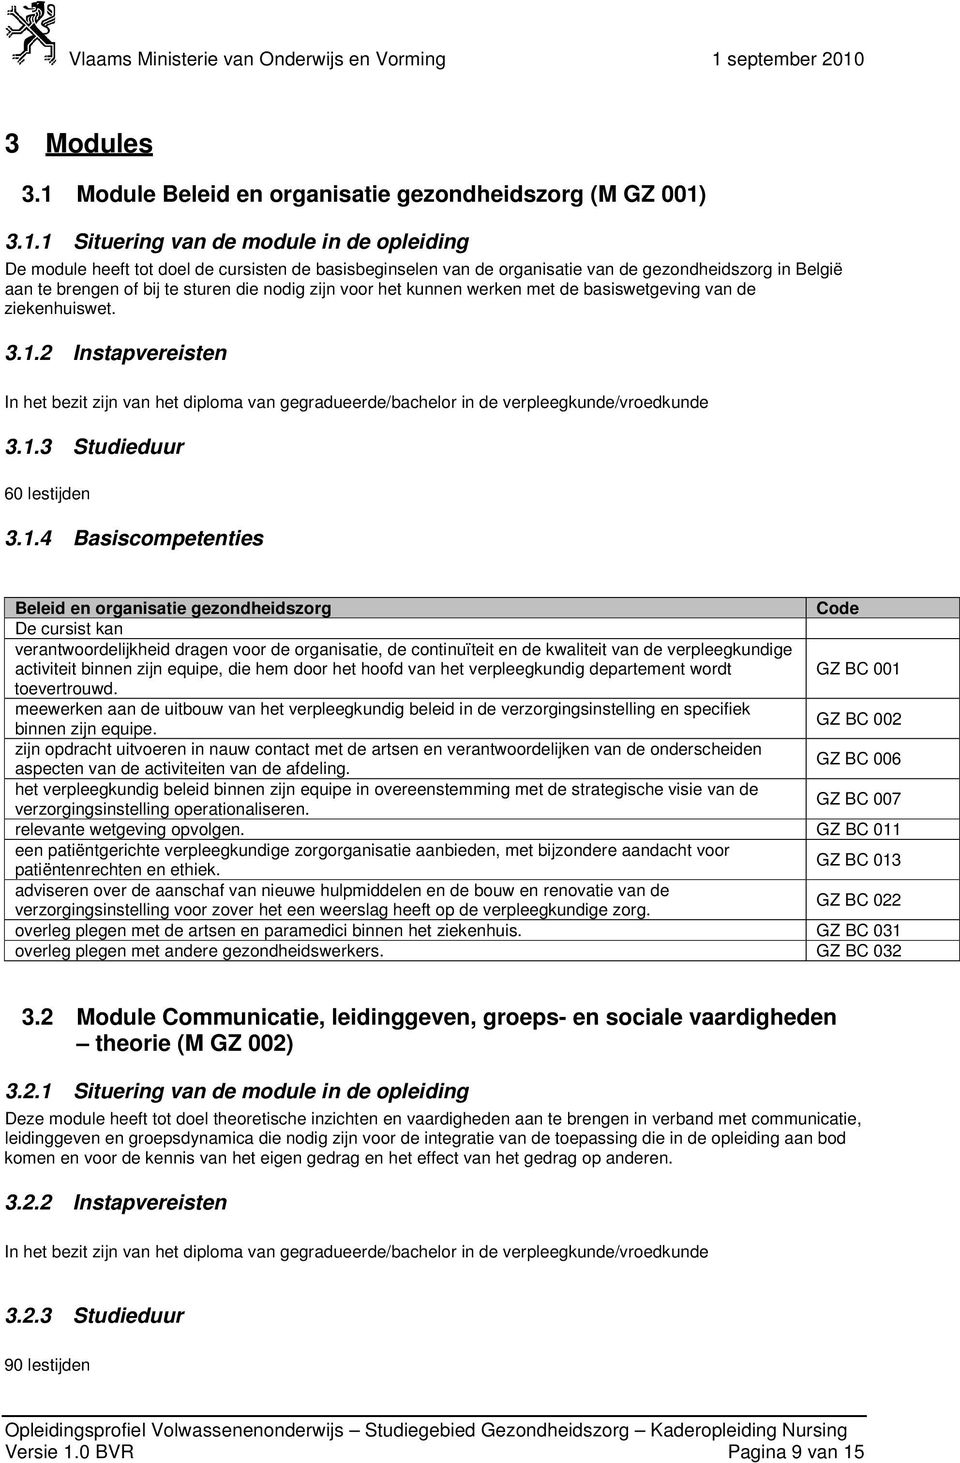 3.1.1 Situering van de module in de opleiding De module heeft tot doel de cursisten de basisbeginselen van de organisatie van de gezondheidszorg in België aan te brengen of bij te sturen die nodig